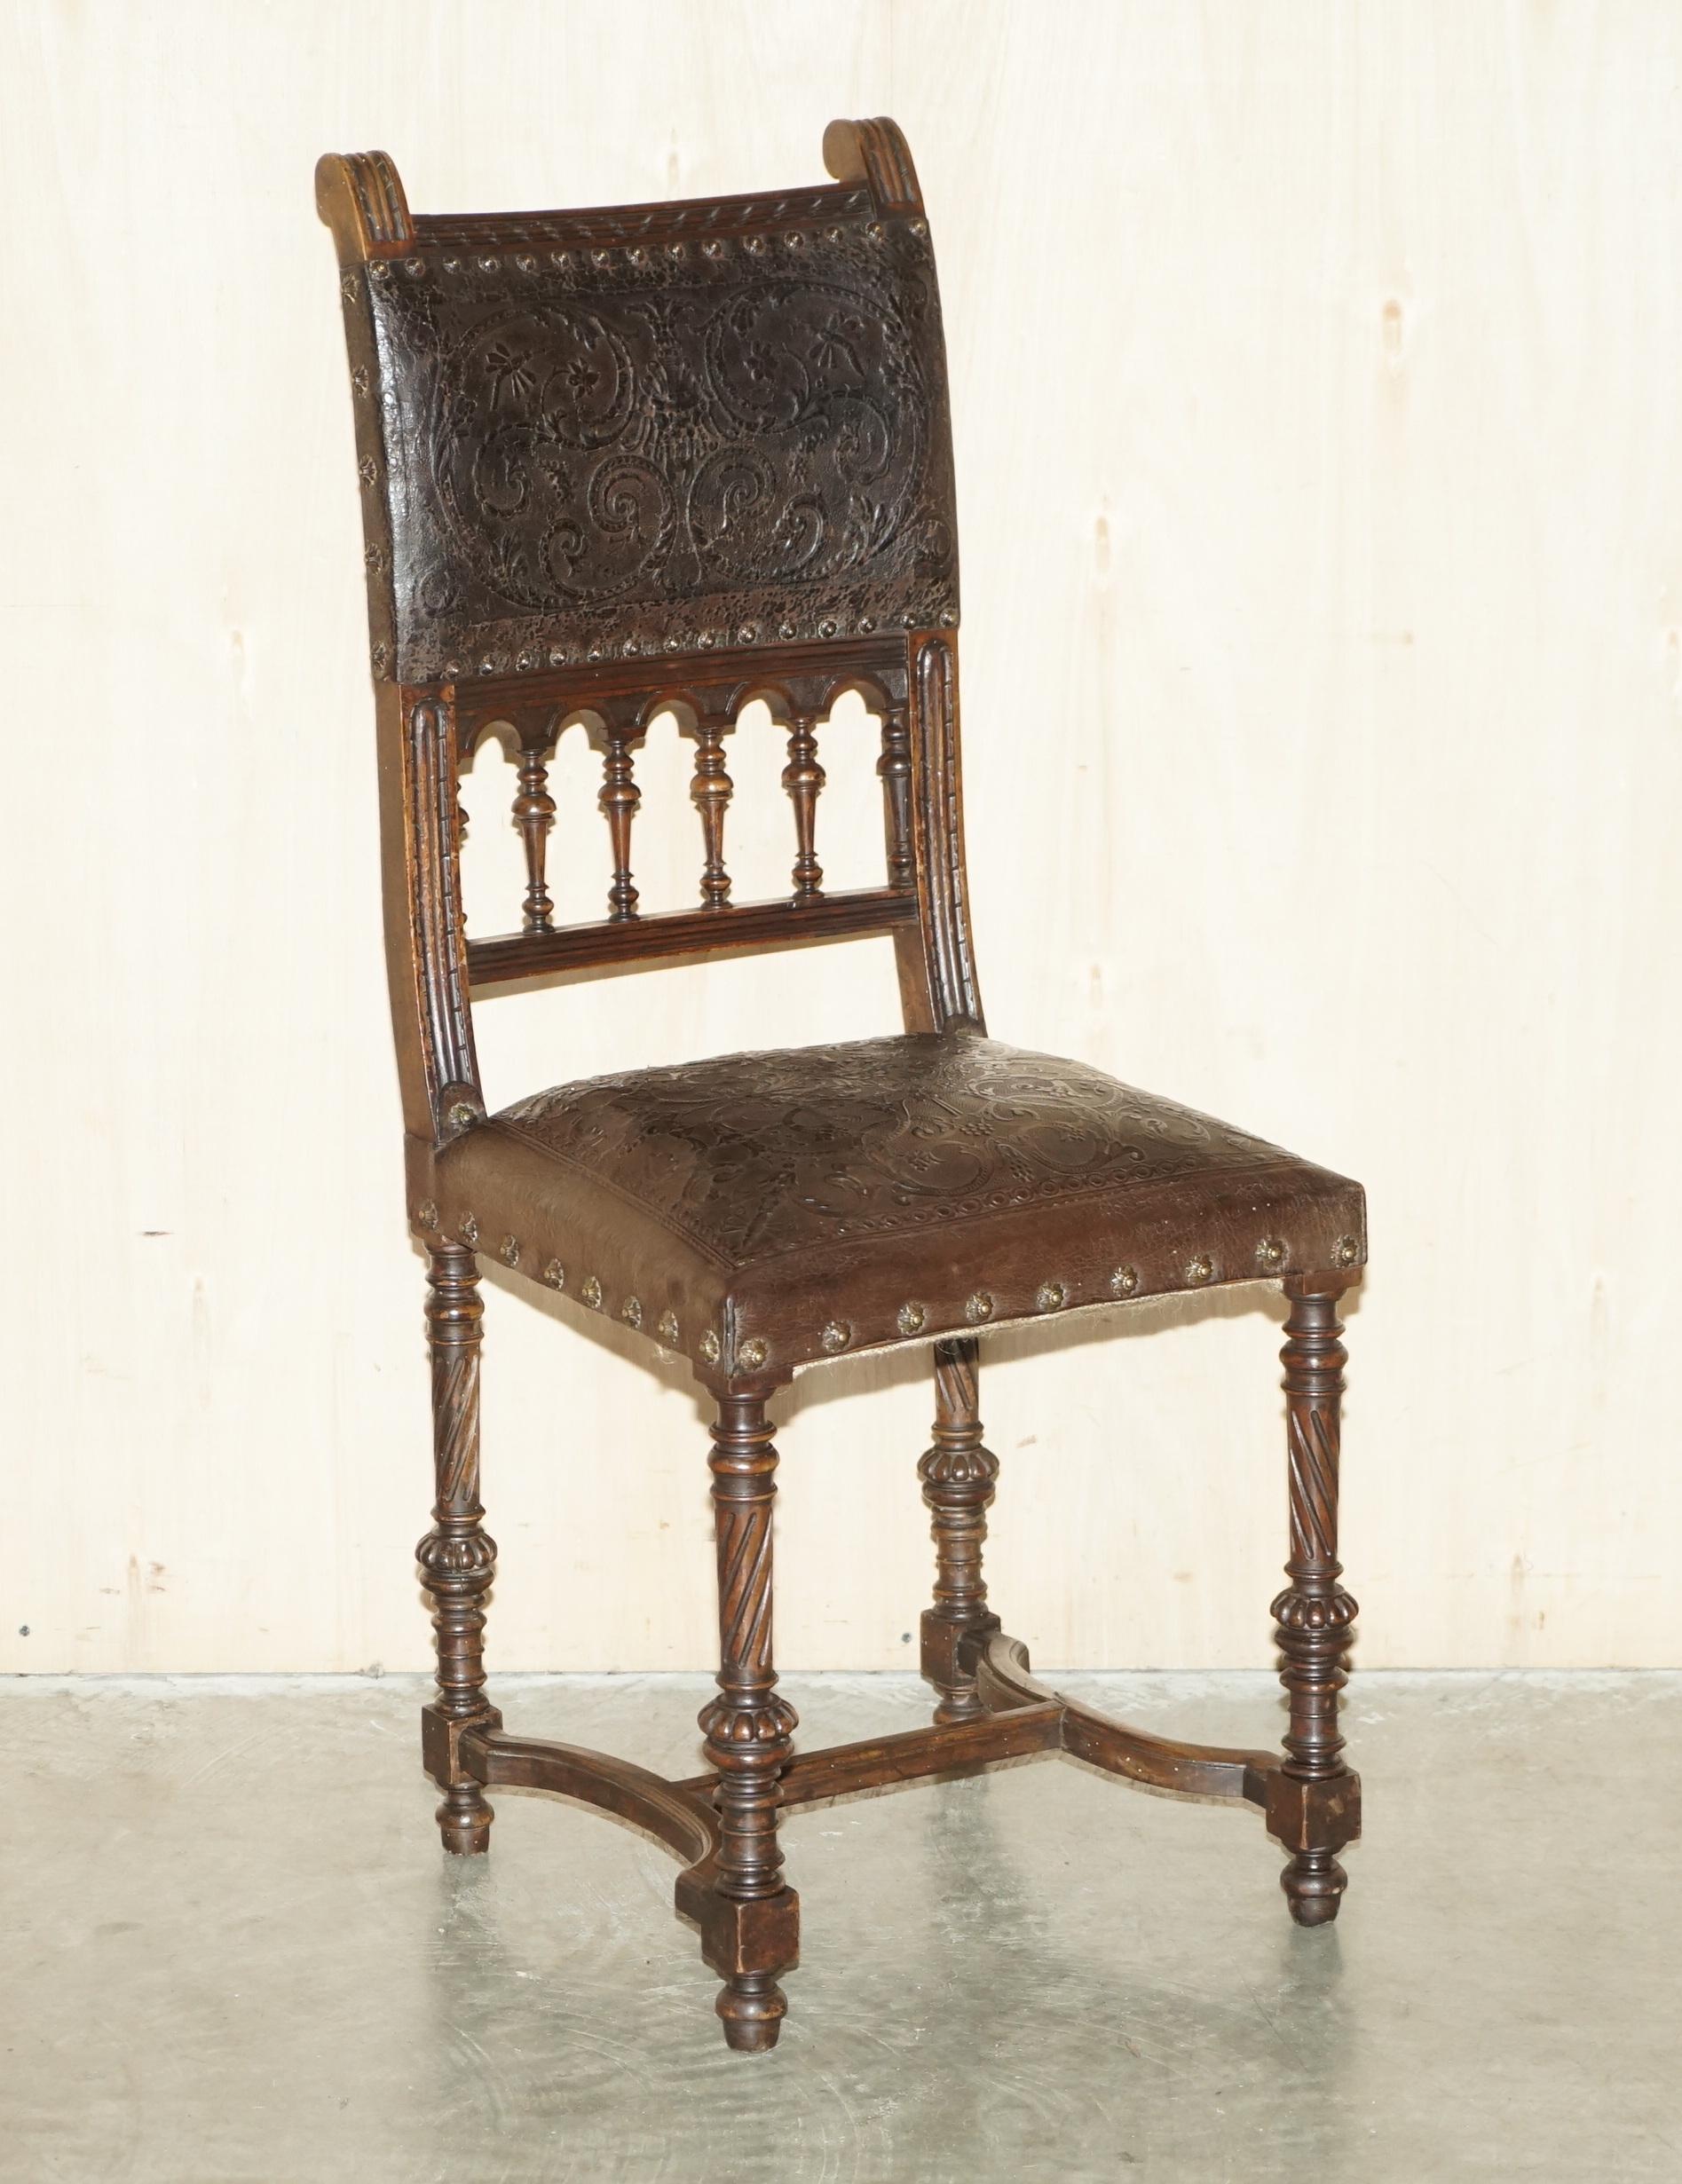 Wir freuen uns, dieses außergewöhnliche Set von sechs Esszimmerstühlen aus französischer Eiche mit geprägter brauner Lederpolsterung von HENRY II um 1880 zum Verkauf anzubieten.

Ein sehr seltener und absolut originaler Satz viktorianischer